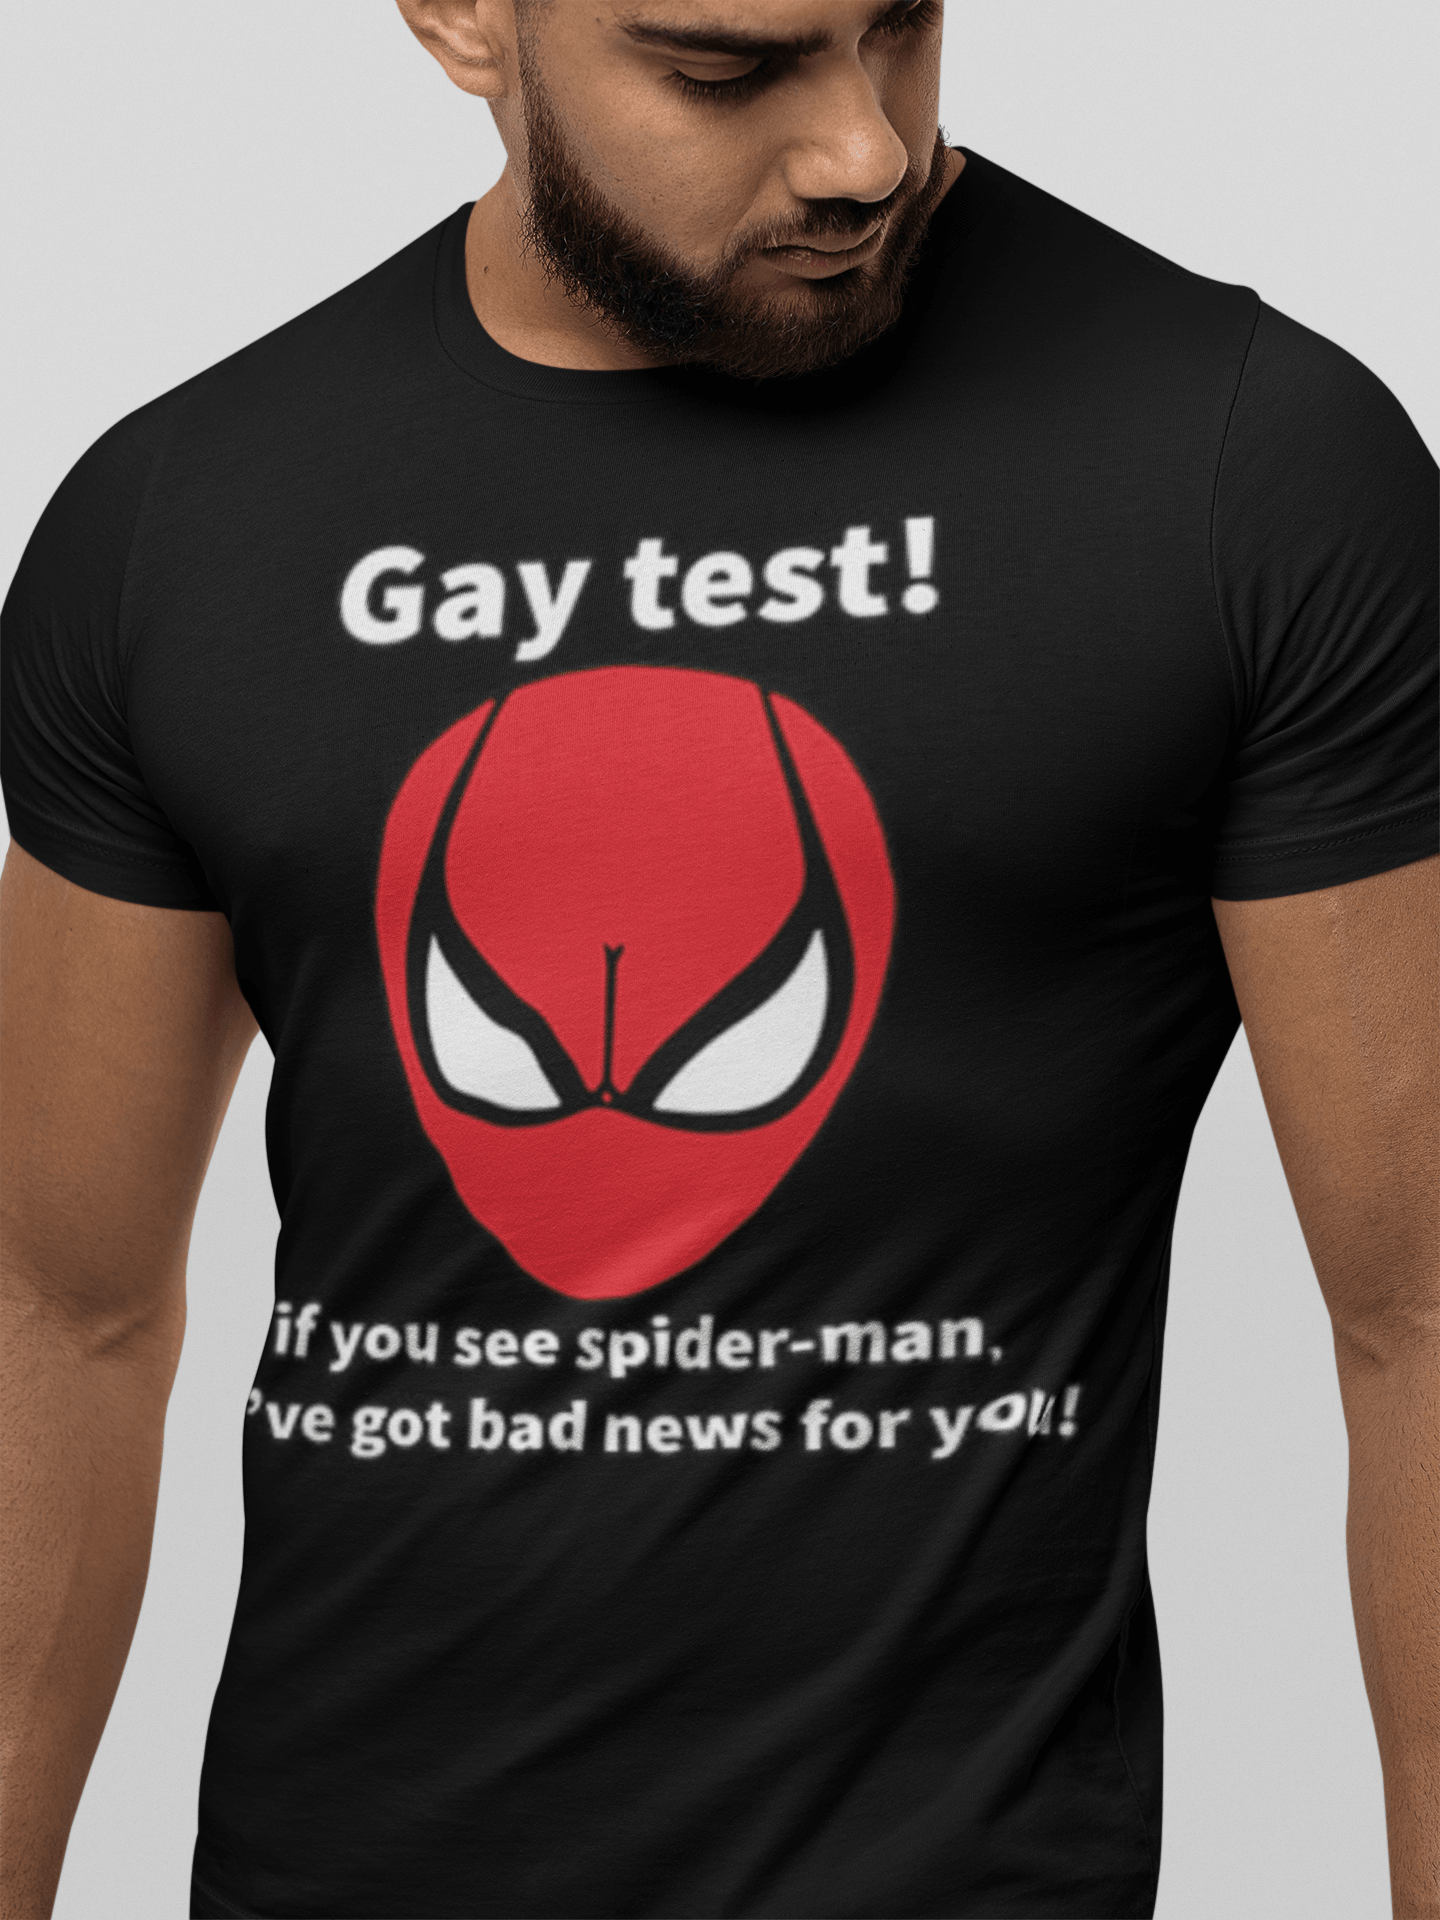 Soft T-Shirt Top Koala 100% Cotton Gay Superhero Test Unisex Tee - TopKoalaTee